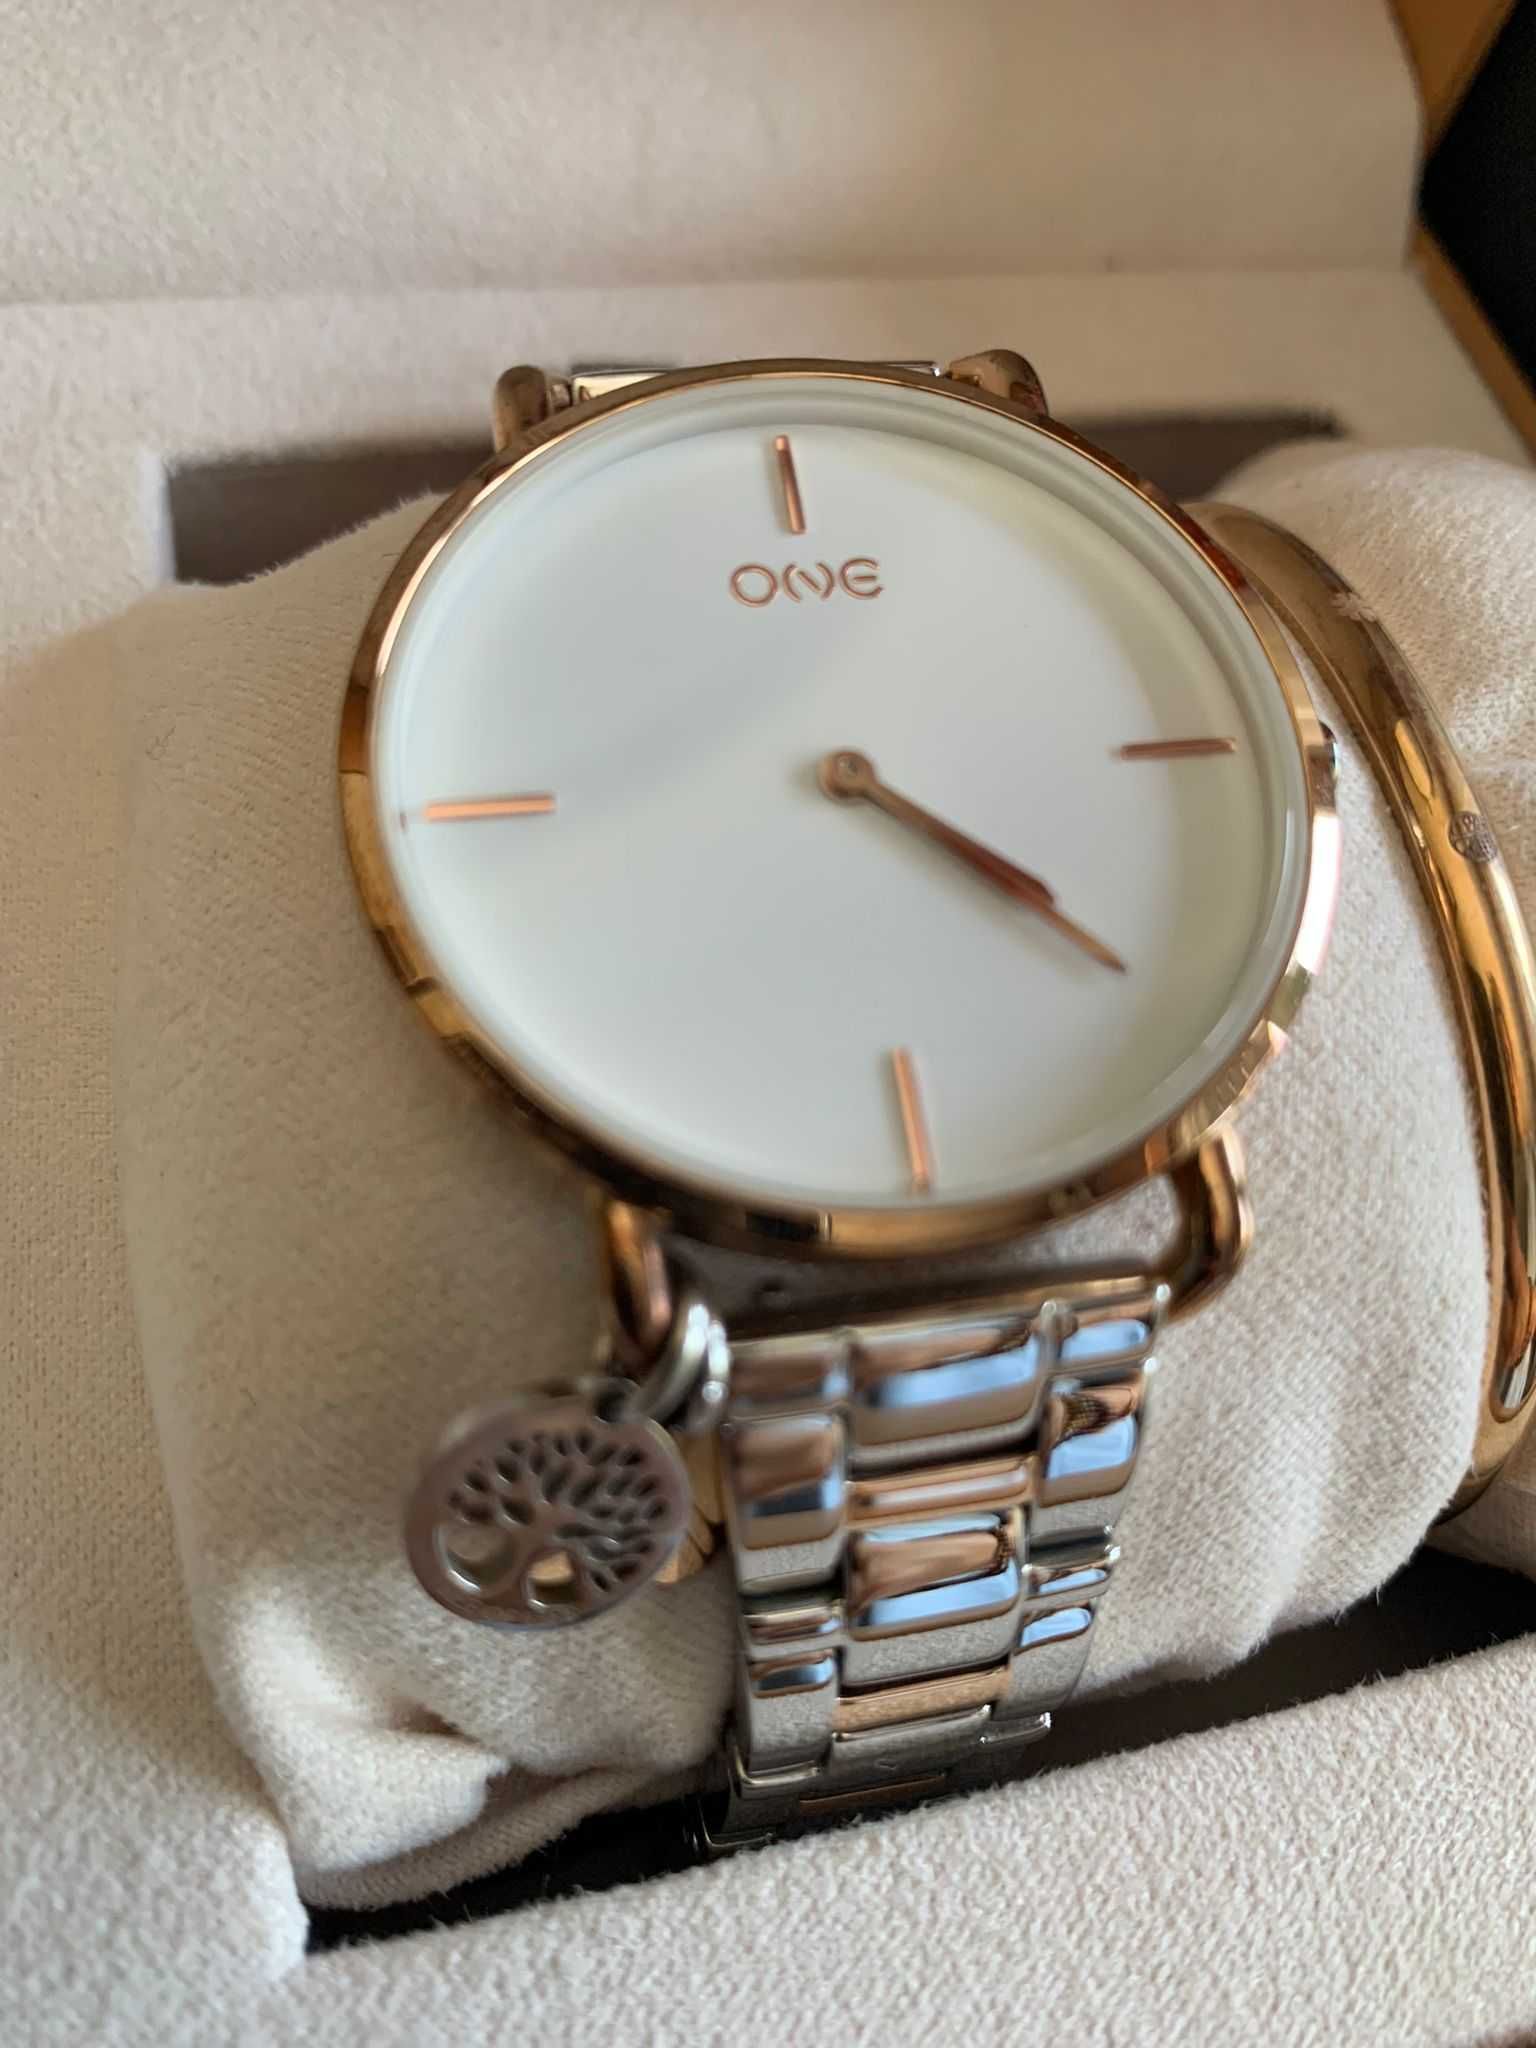 Relógio da ONE + Caixa Original